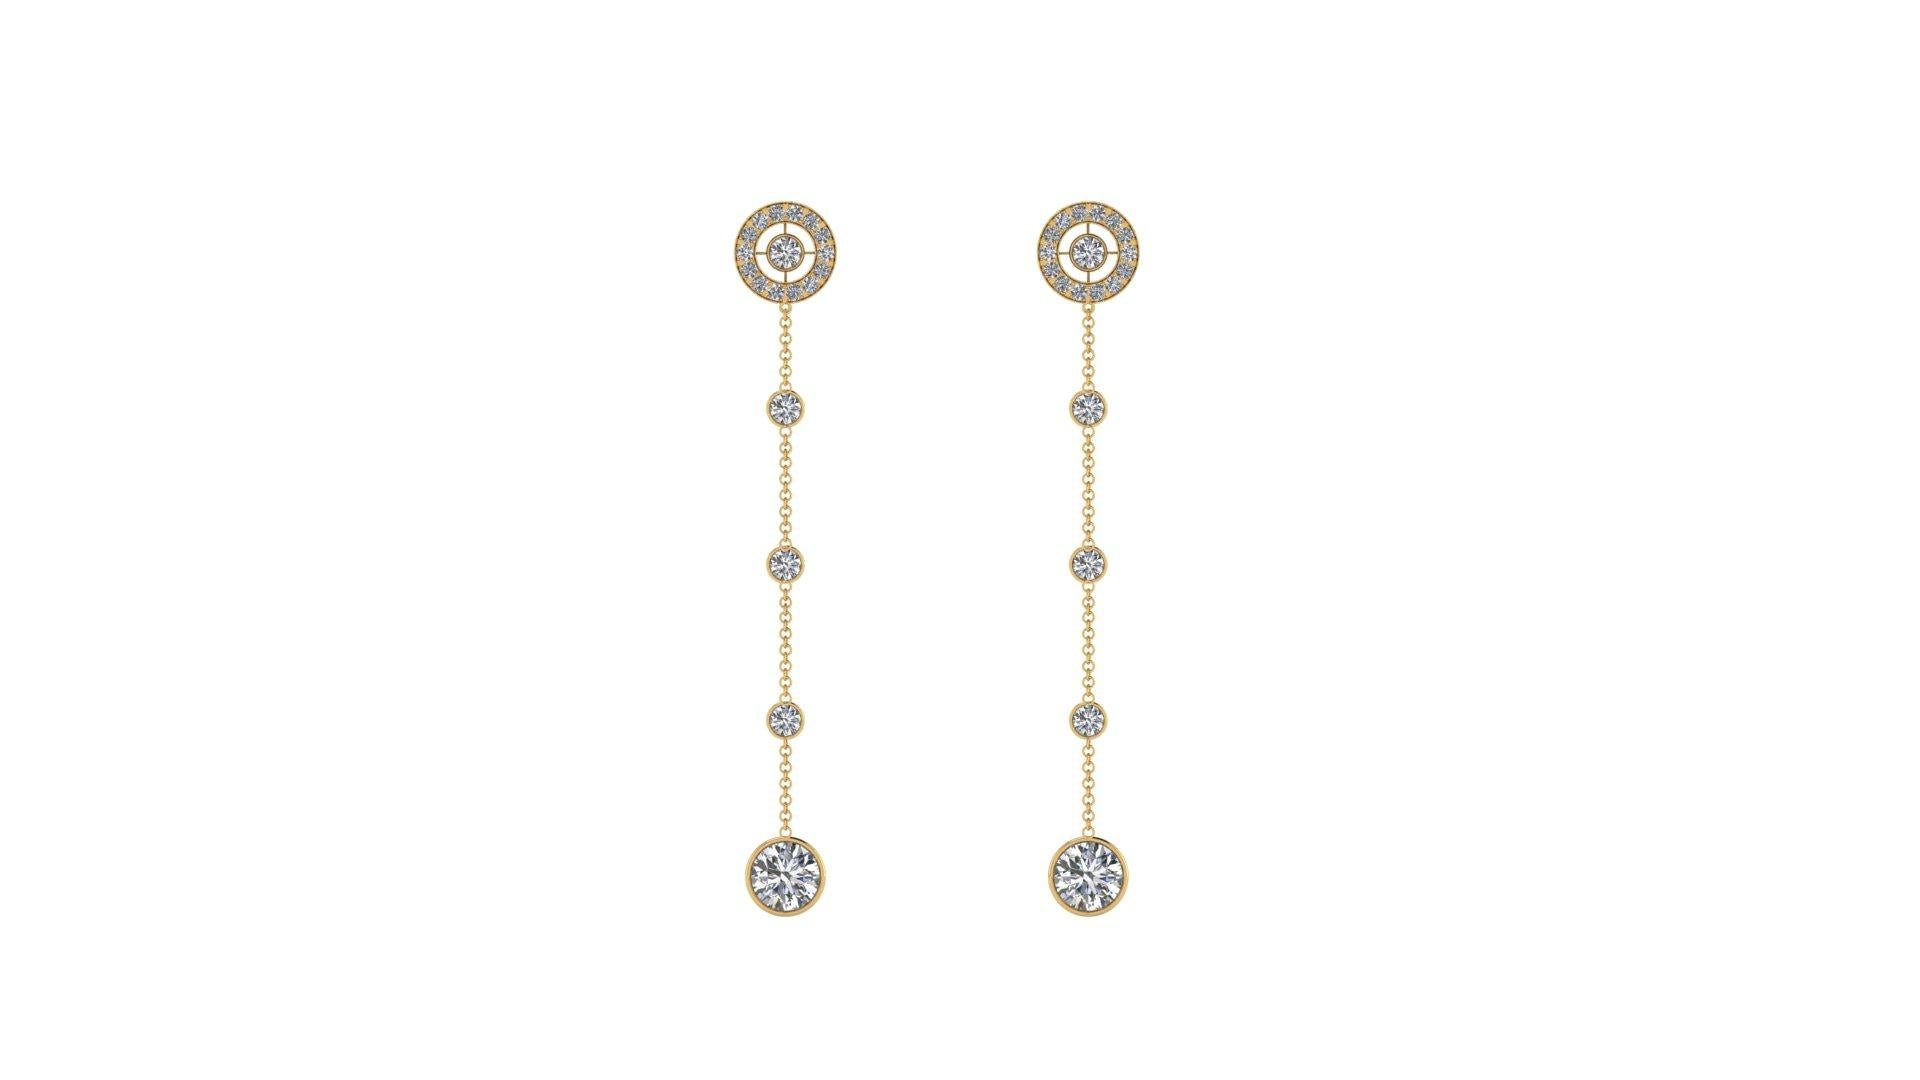 3.25 Carat Diamonds Dangling Earrings in 18k Gold For Sale 2